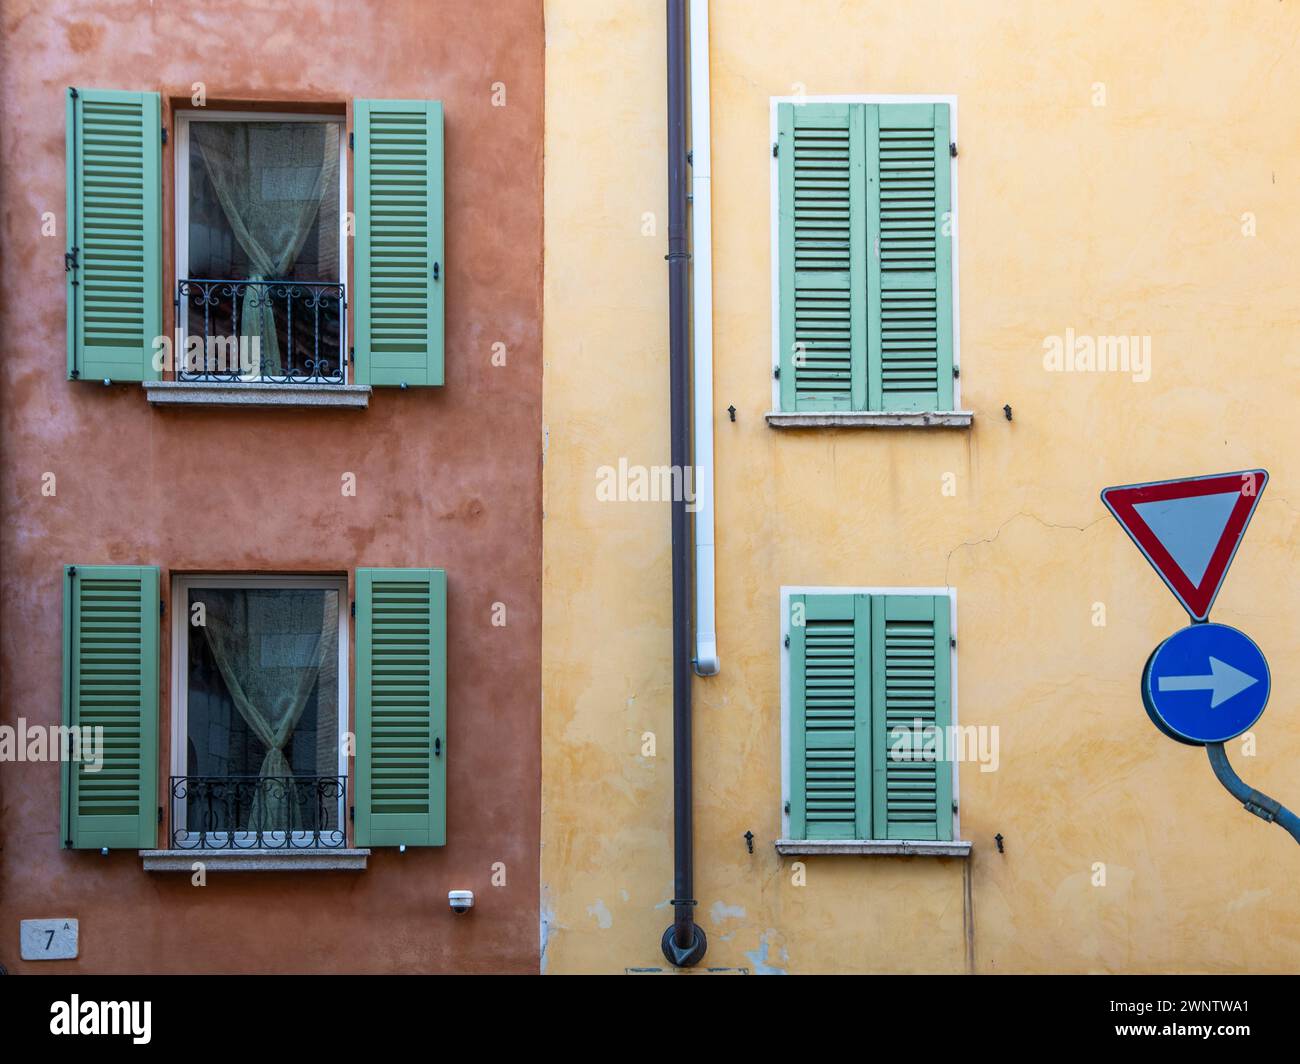 Straßen und Architektur in der italienischen Stadt brescia Stockfoto